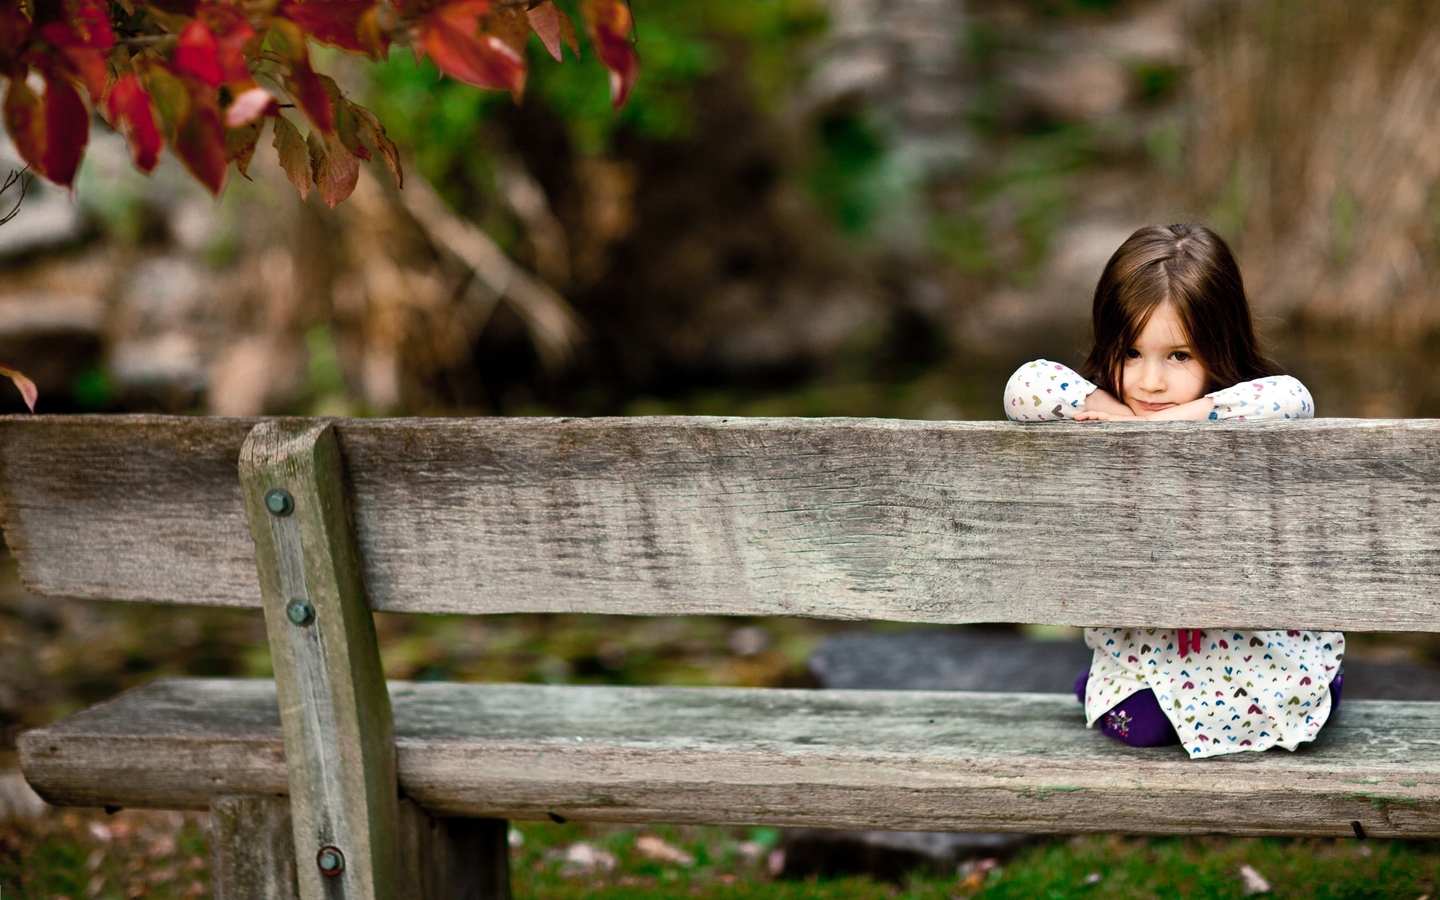 Картинка: Девочка, скамейка, сидит, смотрит, осень